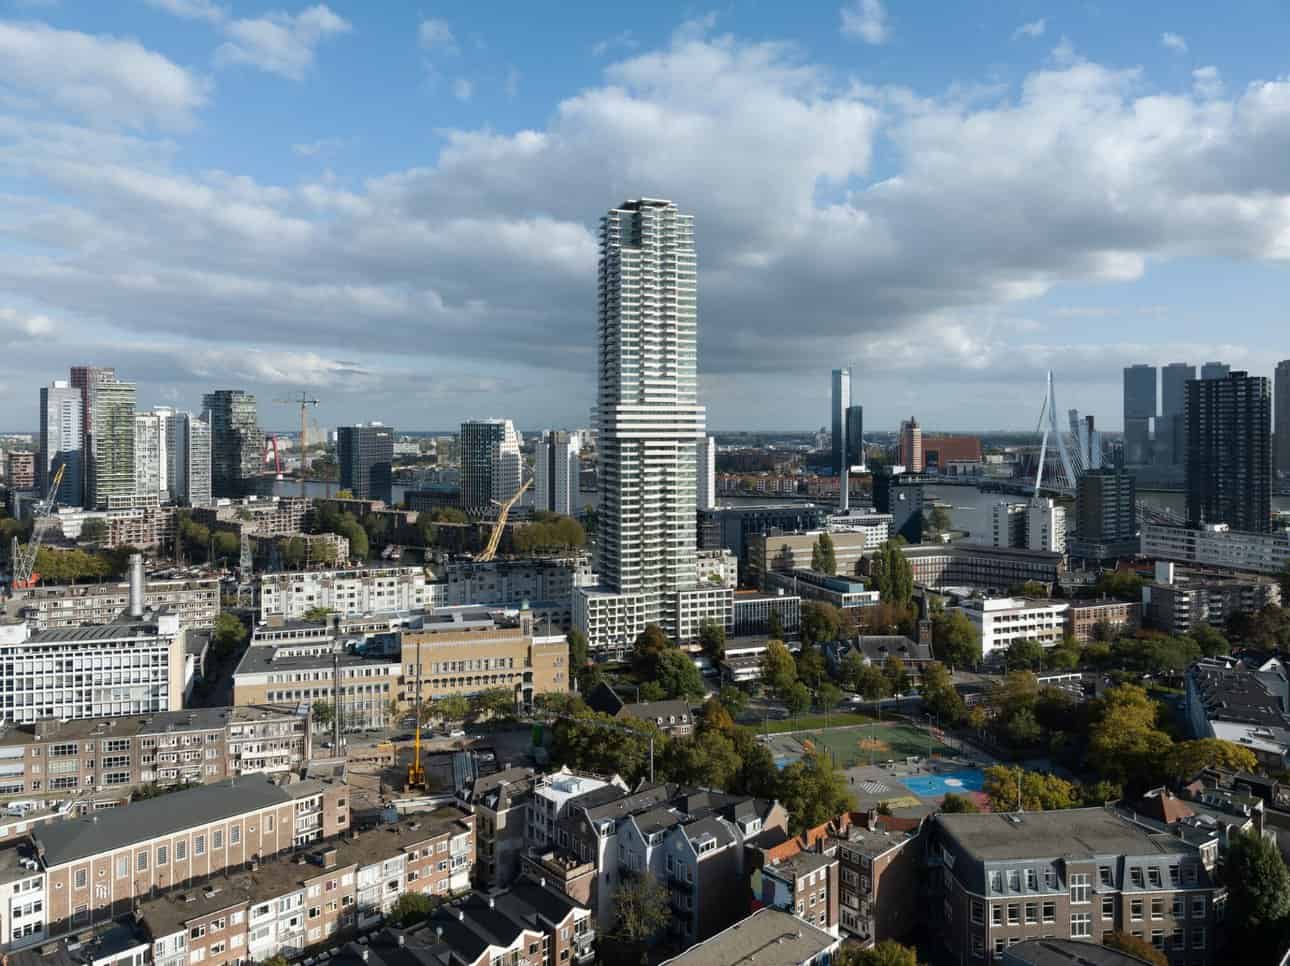 Cooltower Rotterdam. Photo credit: Ossip van Duivenbode